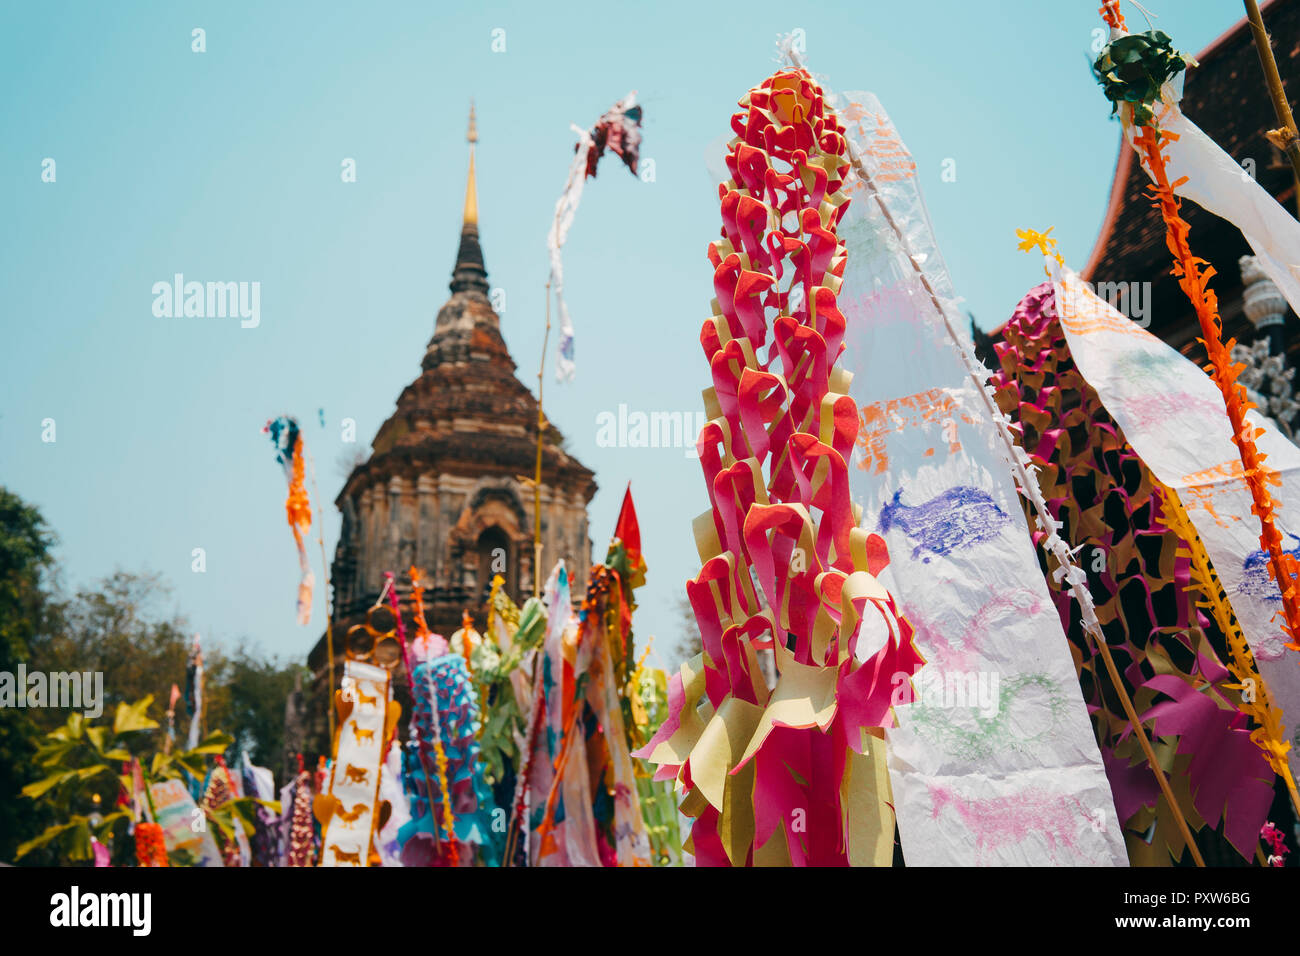 Thailandia Chiang Mai, decorazioni per festeggiare il nuovo anno al Wat Lok Moli tempio buddista Foto Stock